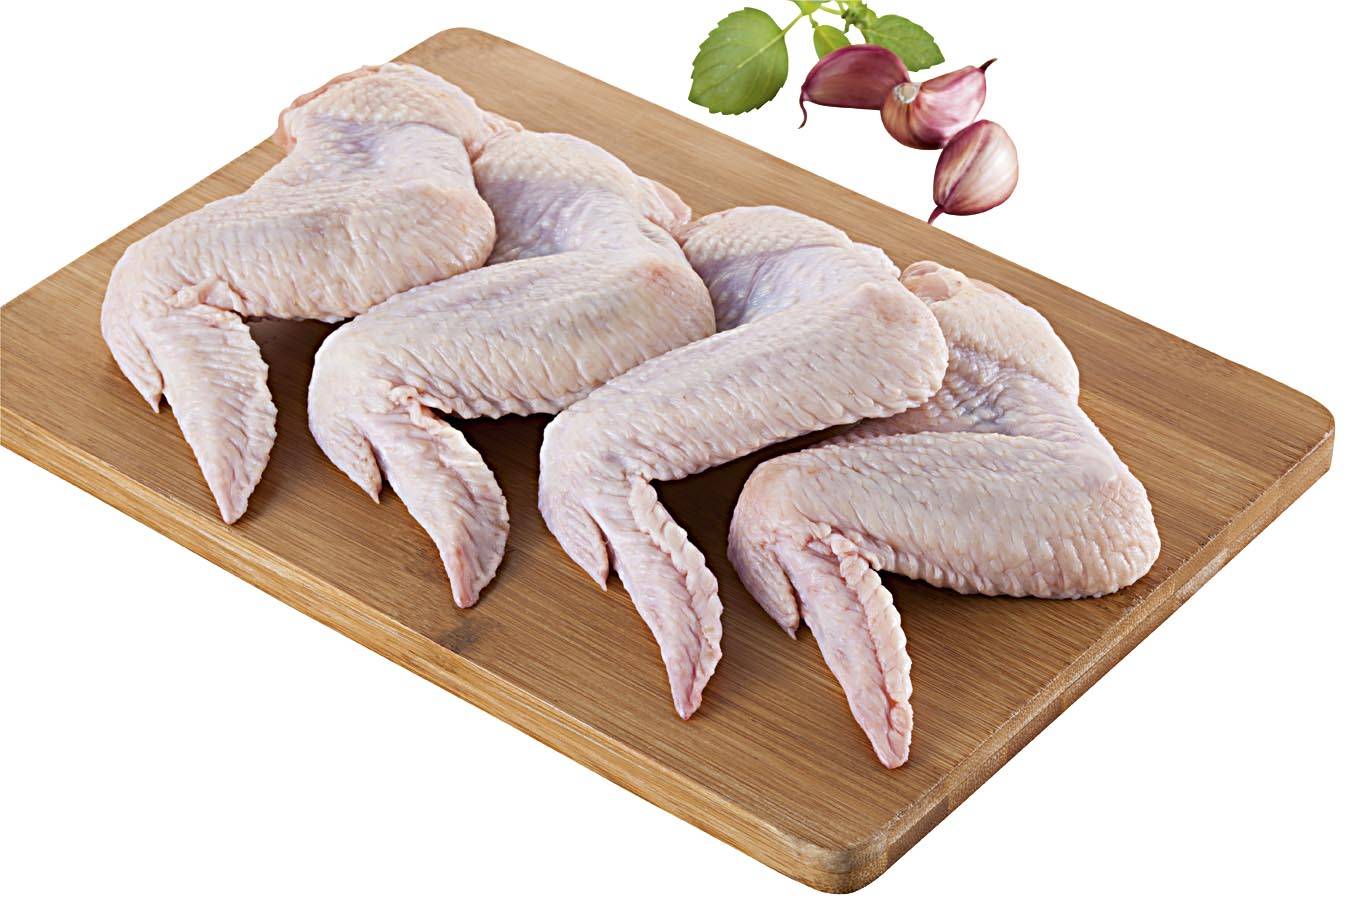 Asa de frango resfriada (embalagem: 1 kg aprox)